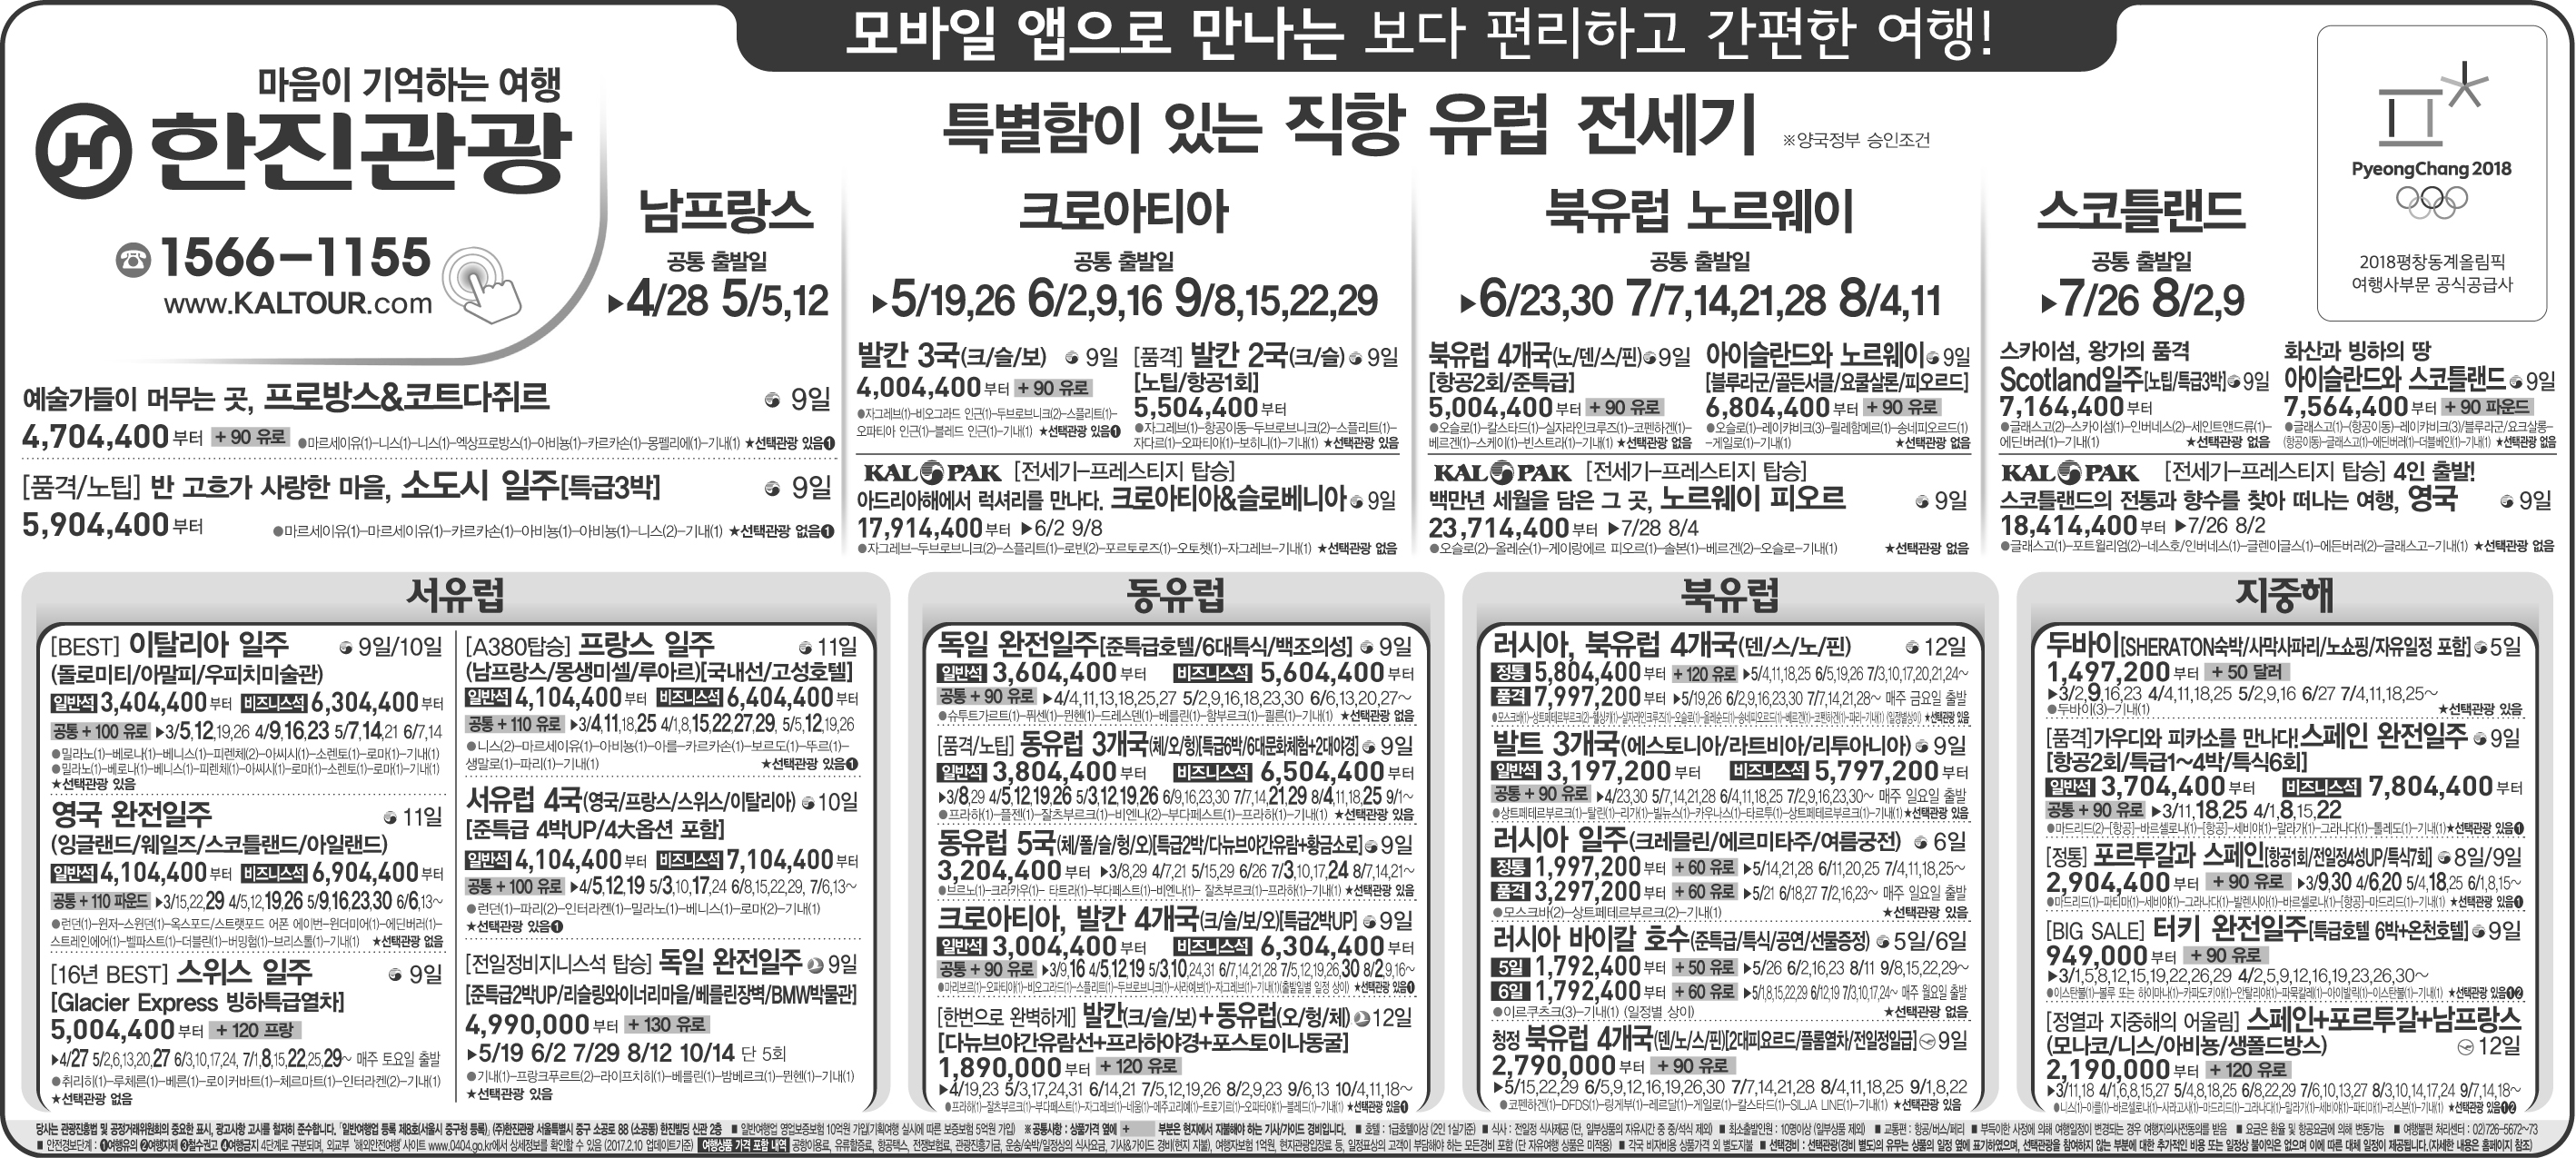 조선일보 [2017.02.13 월요일]